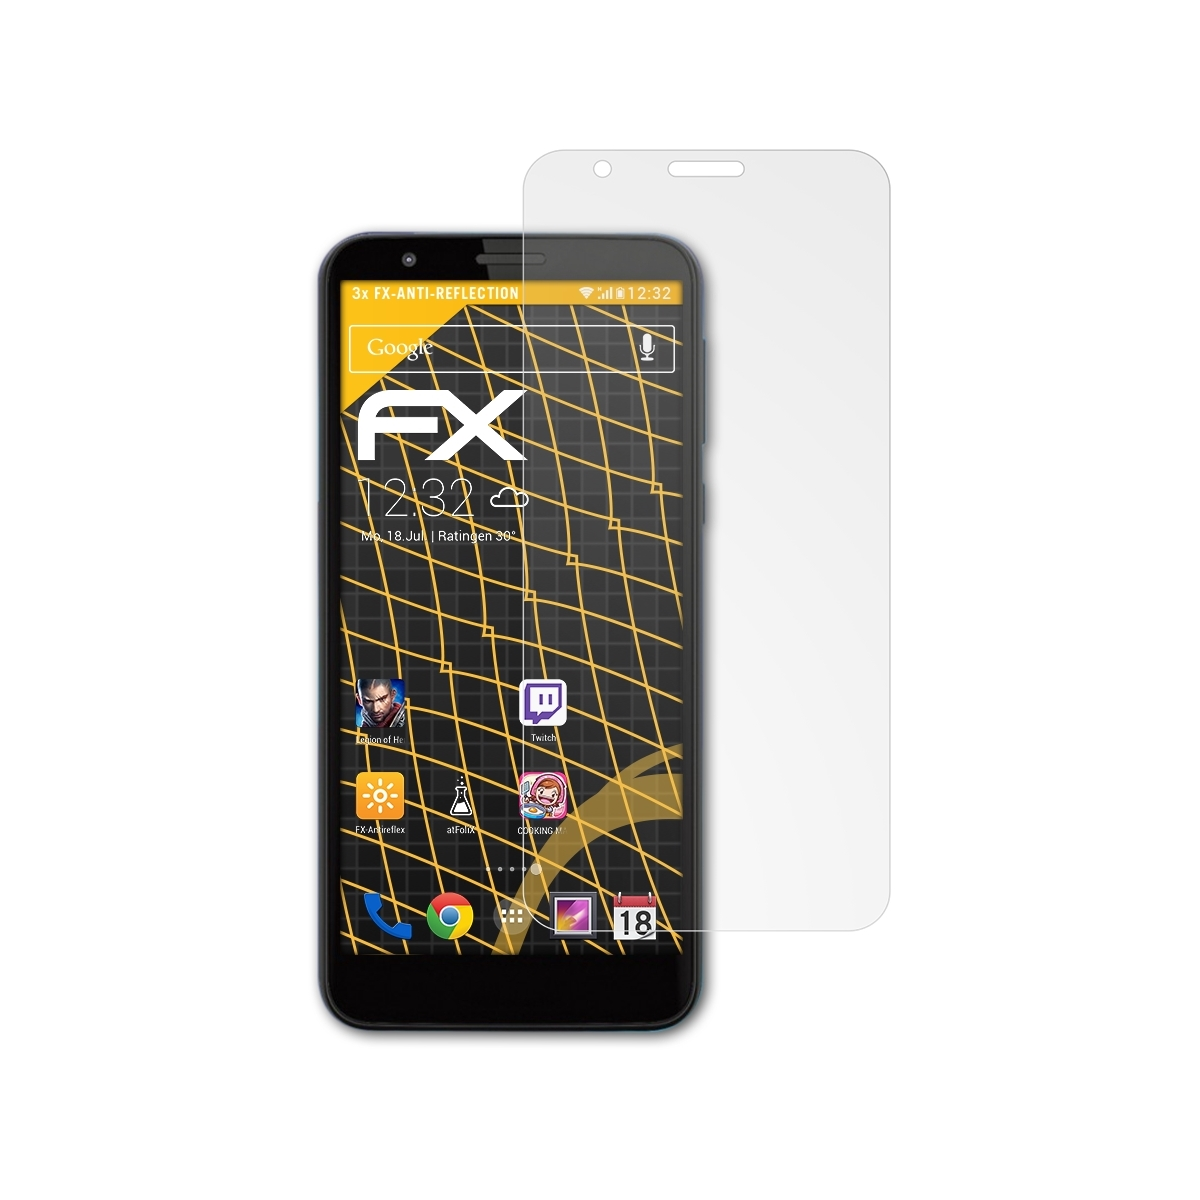 ATFOLIX 3x FX-Antireflex E6) Motorola Displayschutz(für Moto